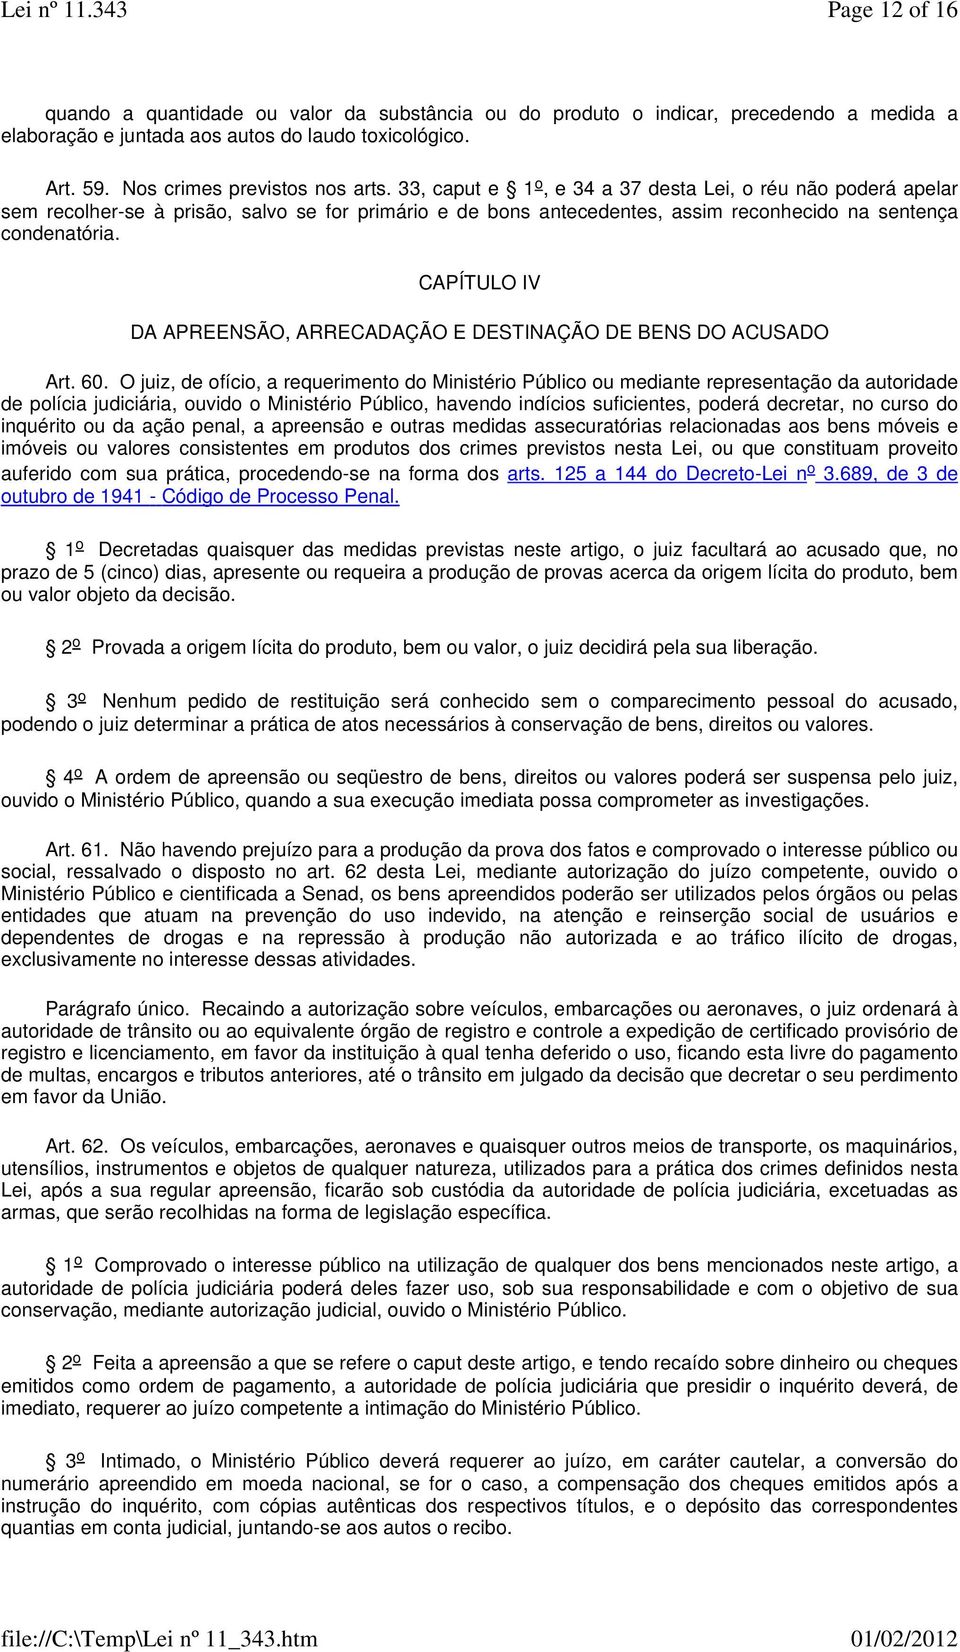 CAPÍTULO IV DA APREENSÃO, ARRECADAÇÃO E DESTINAÇÃO DE BENS DO ACUSADO Art. 60.